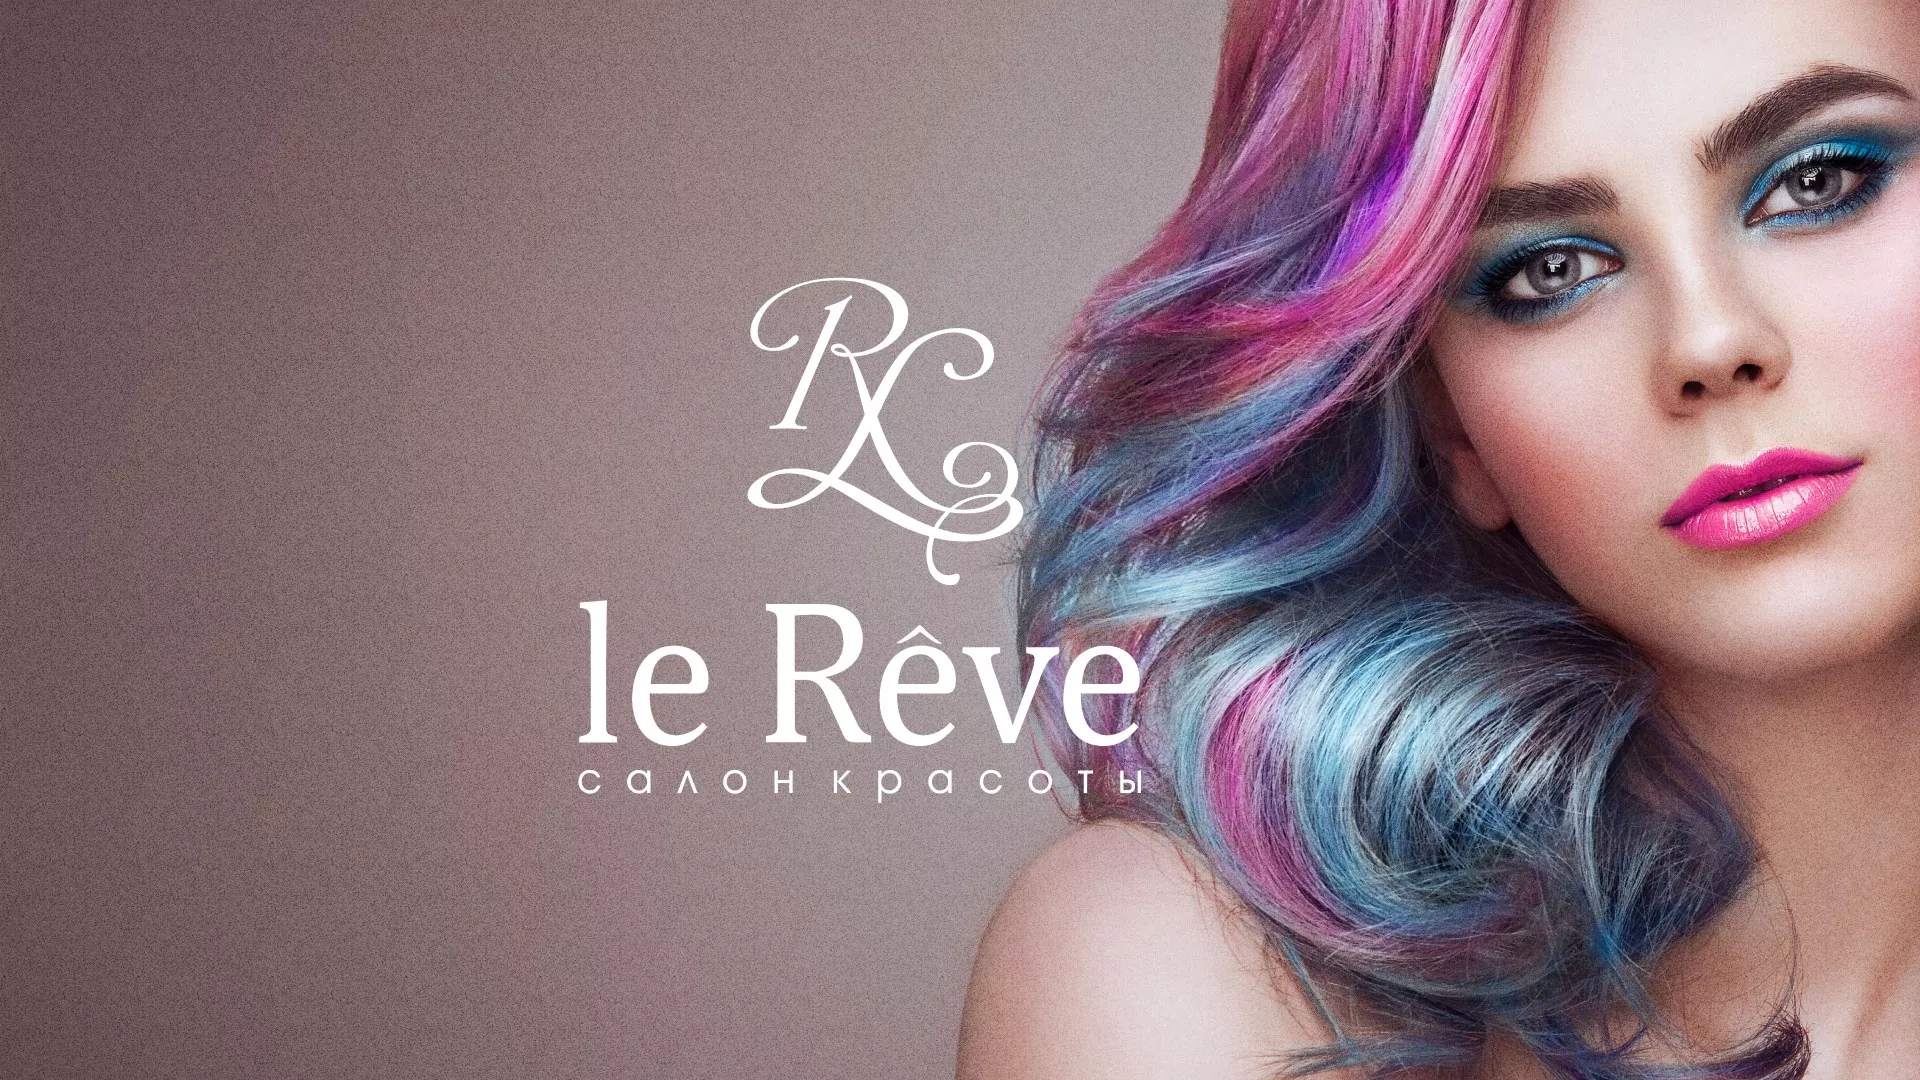 Создание сайта для салона красоты «Le Reve» в Сургуте